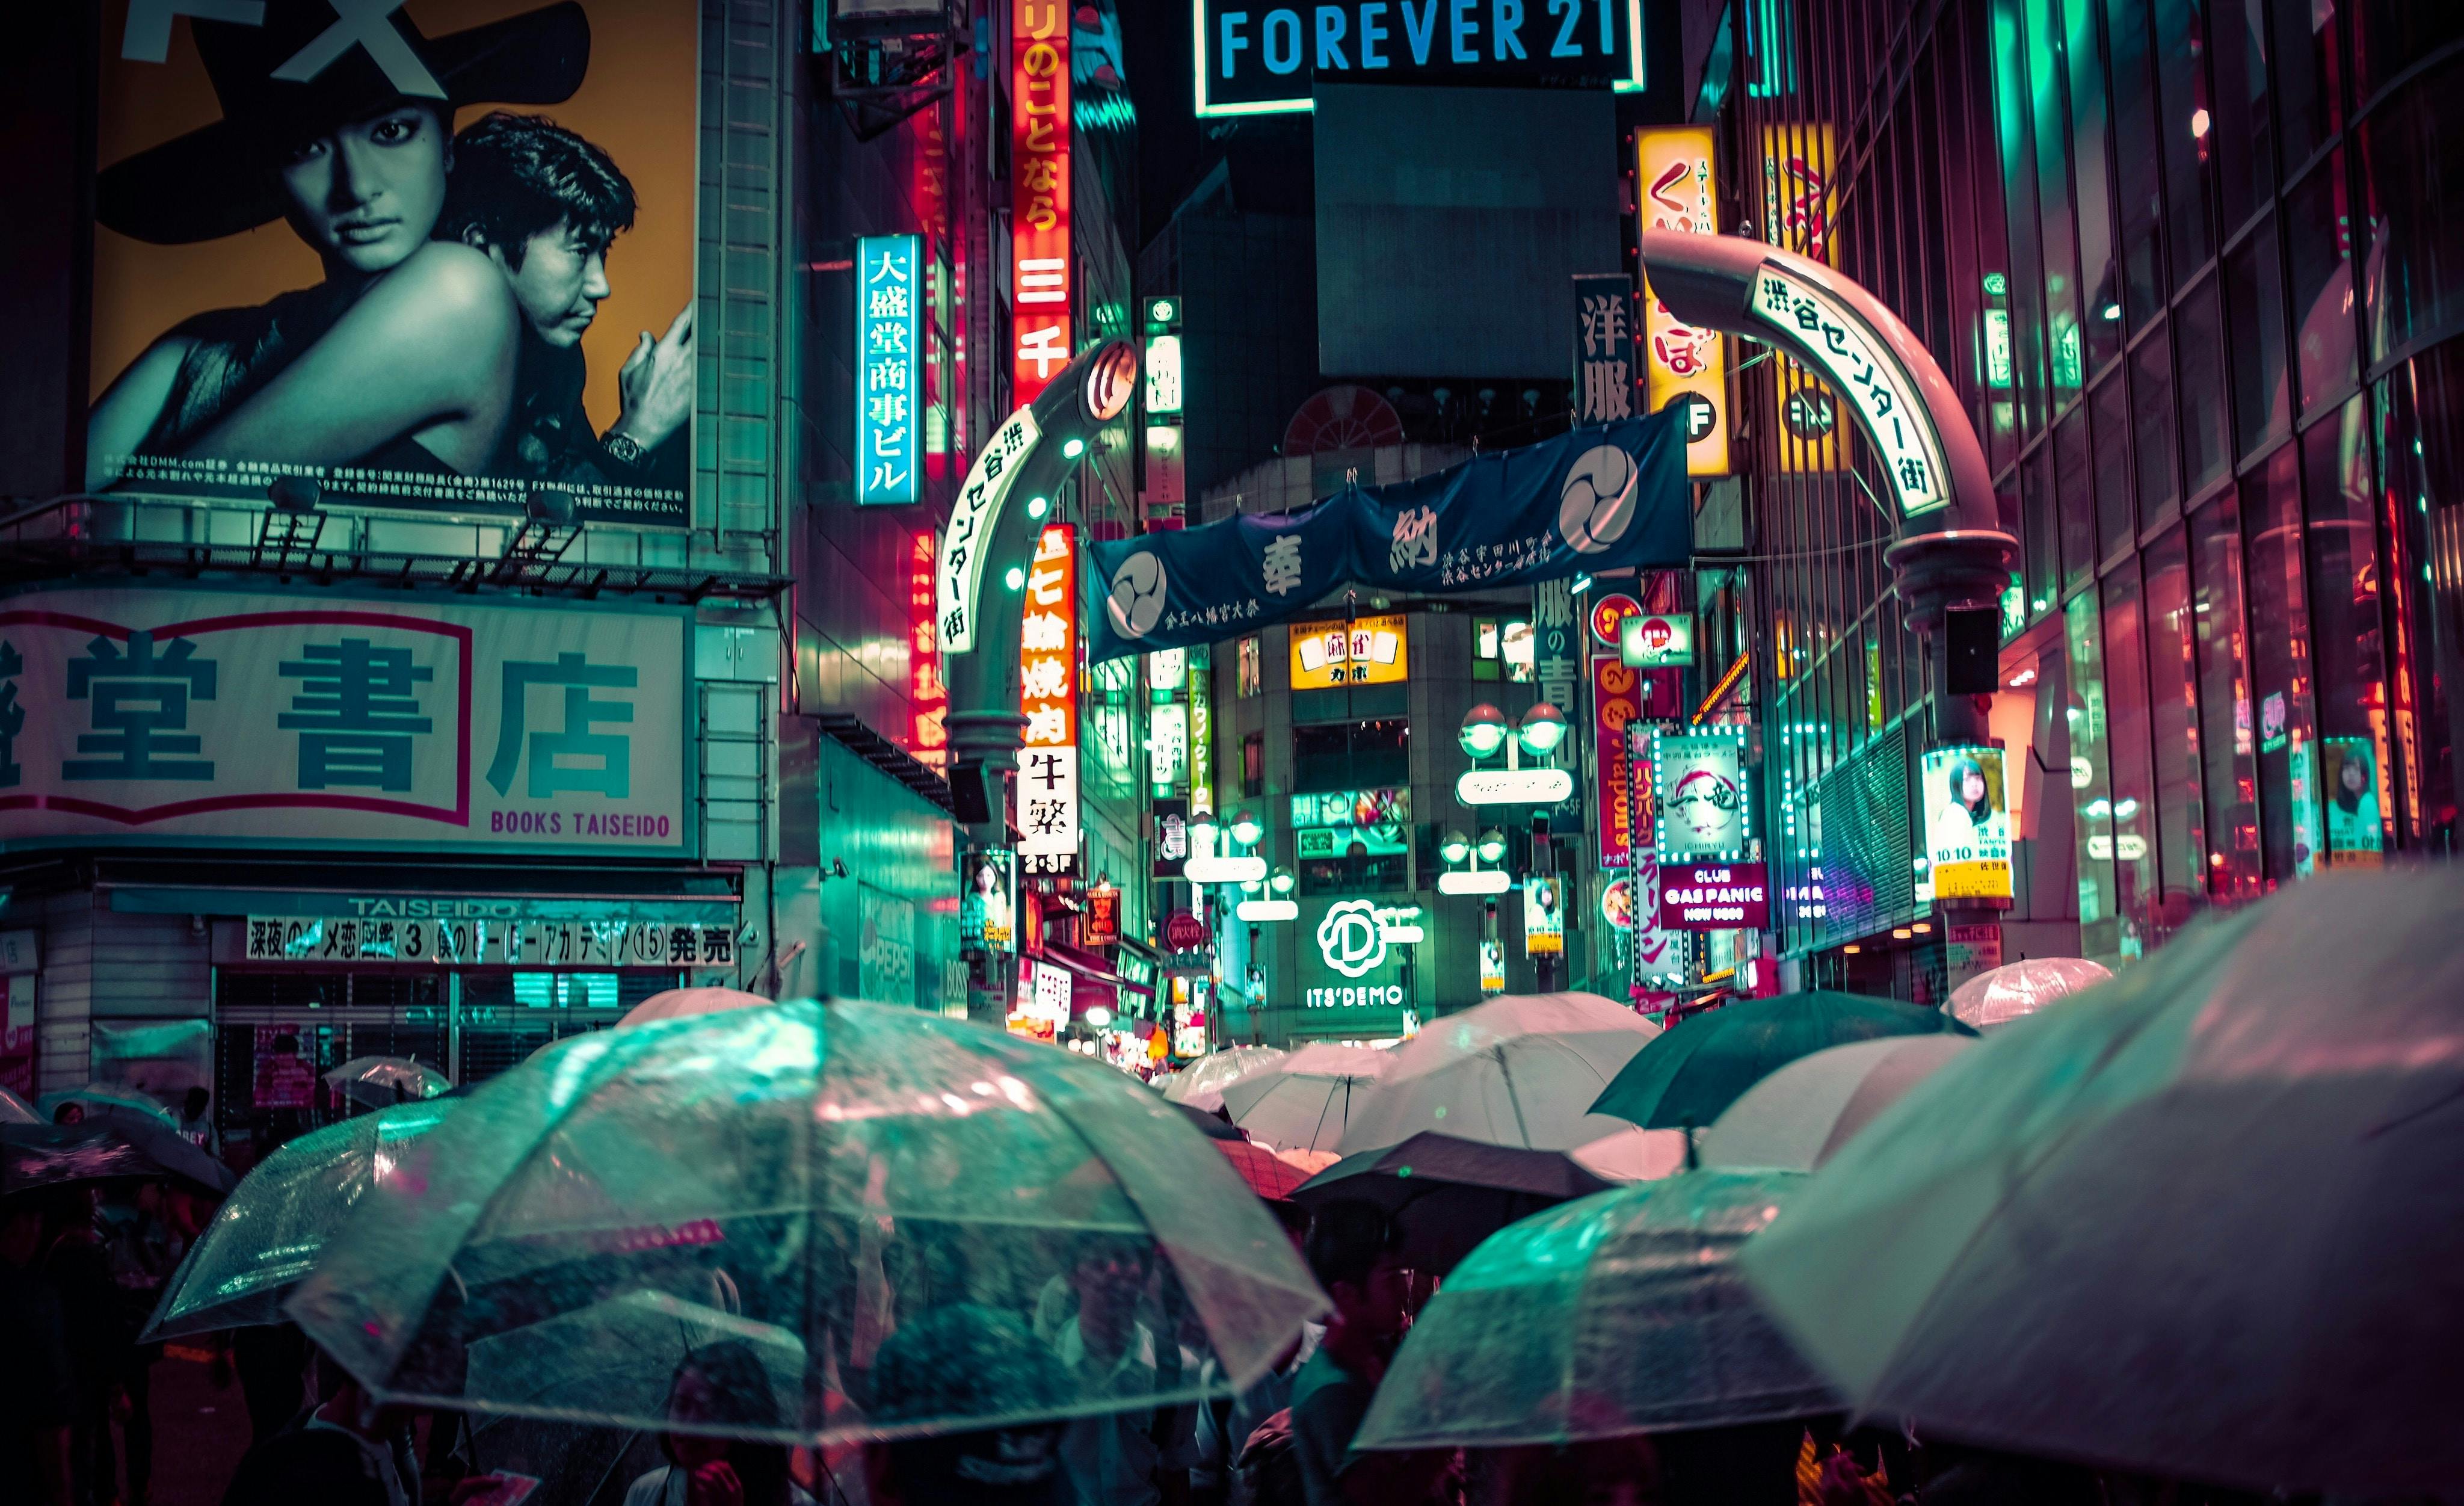 Suasana Shibuya saat hujan turun, banyak orang menggunakan payung.